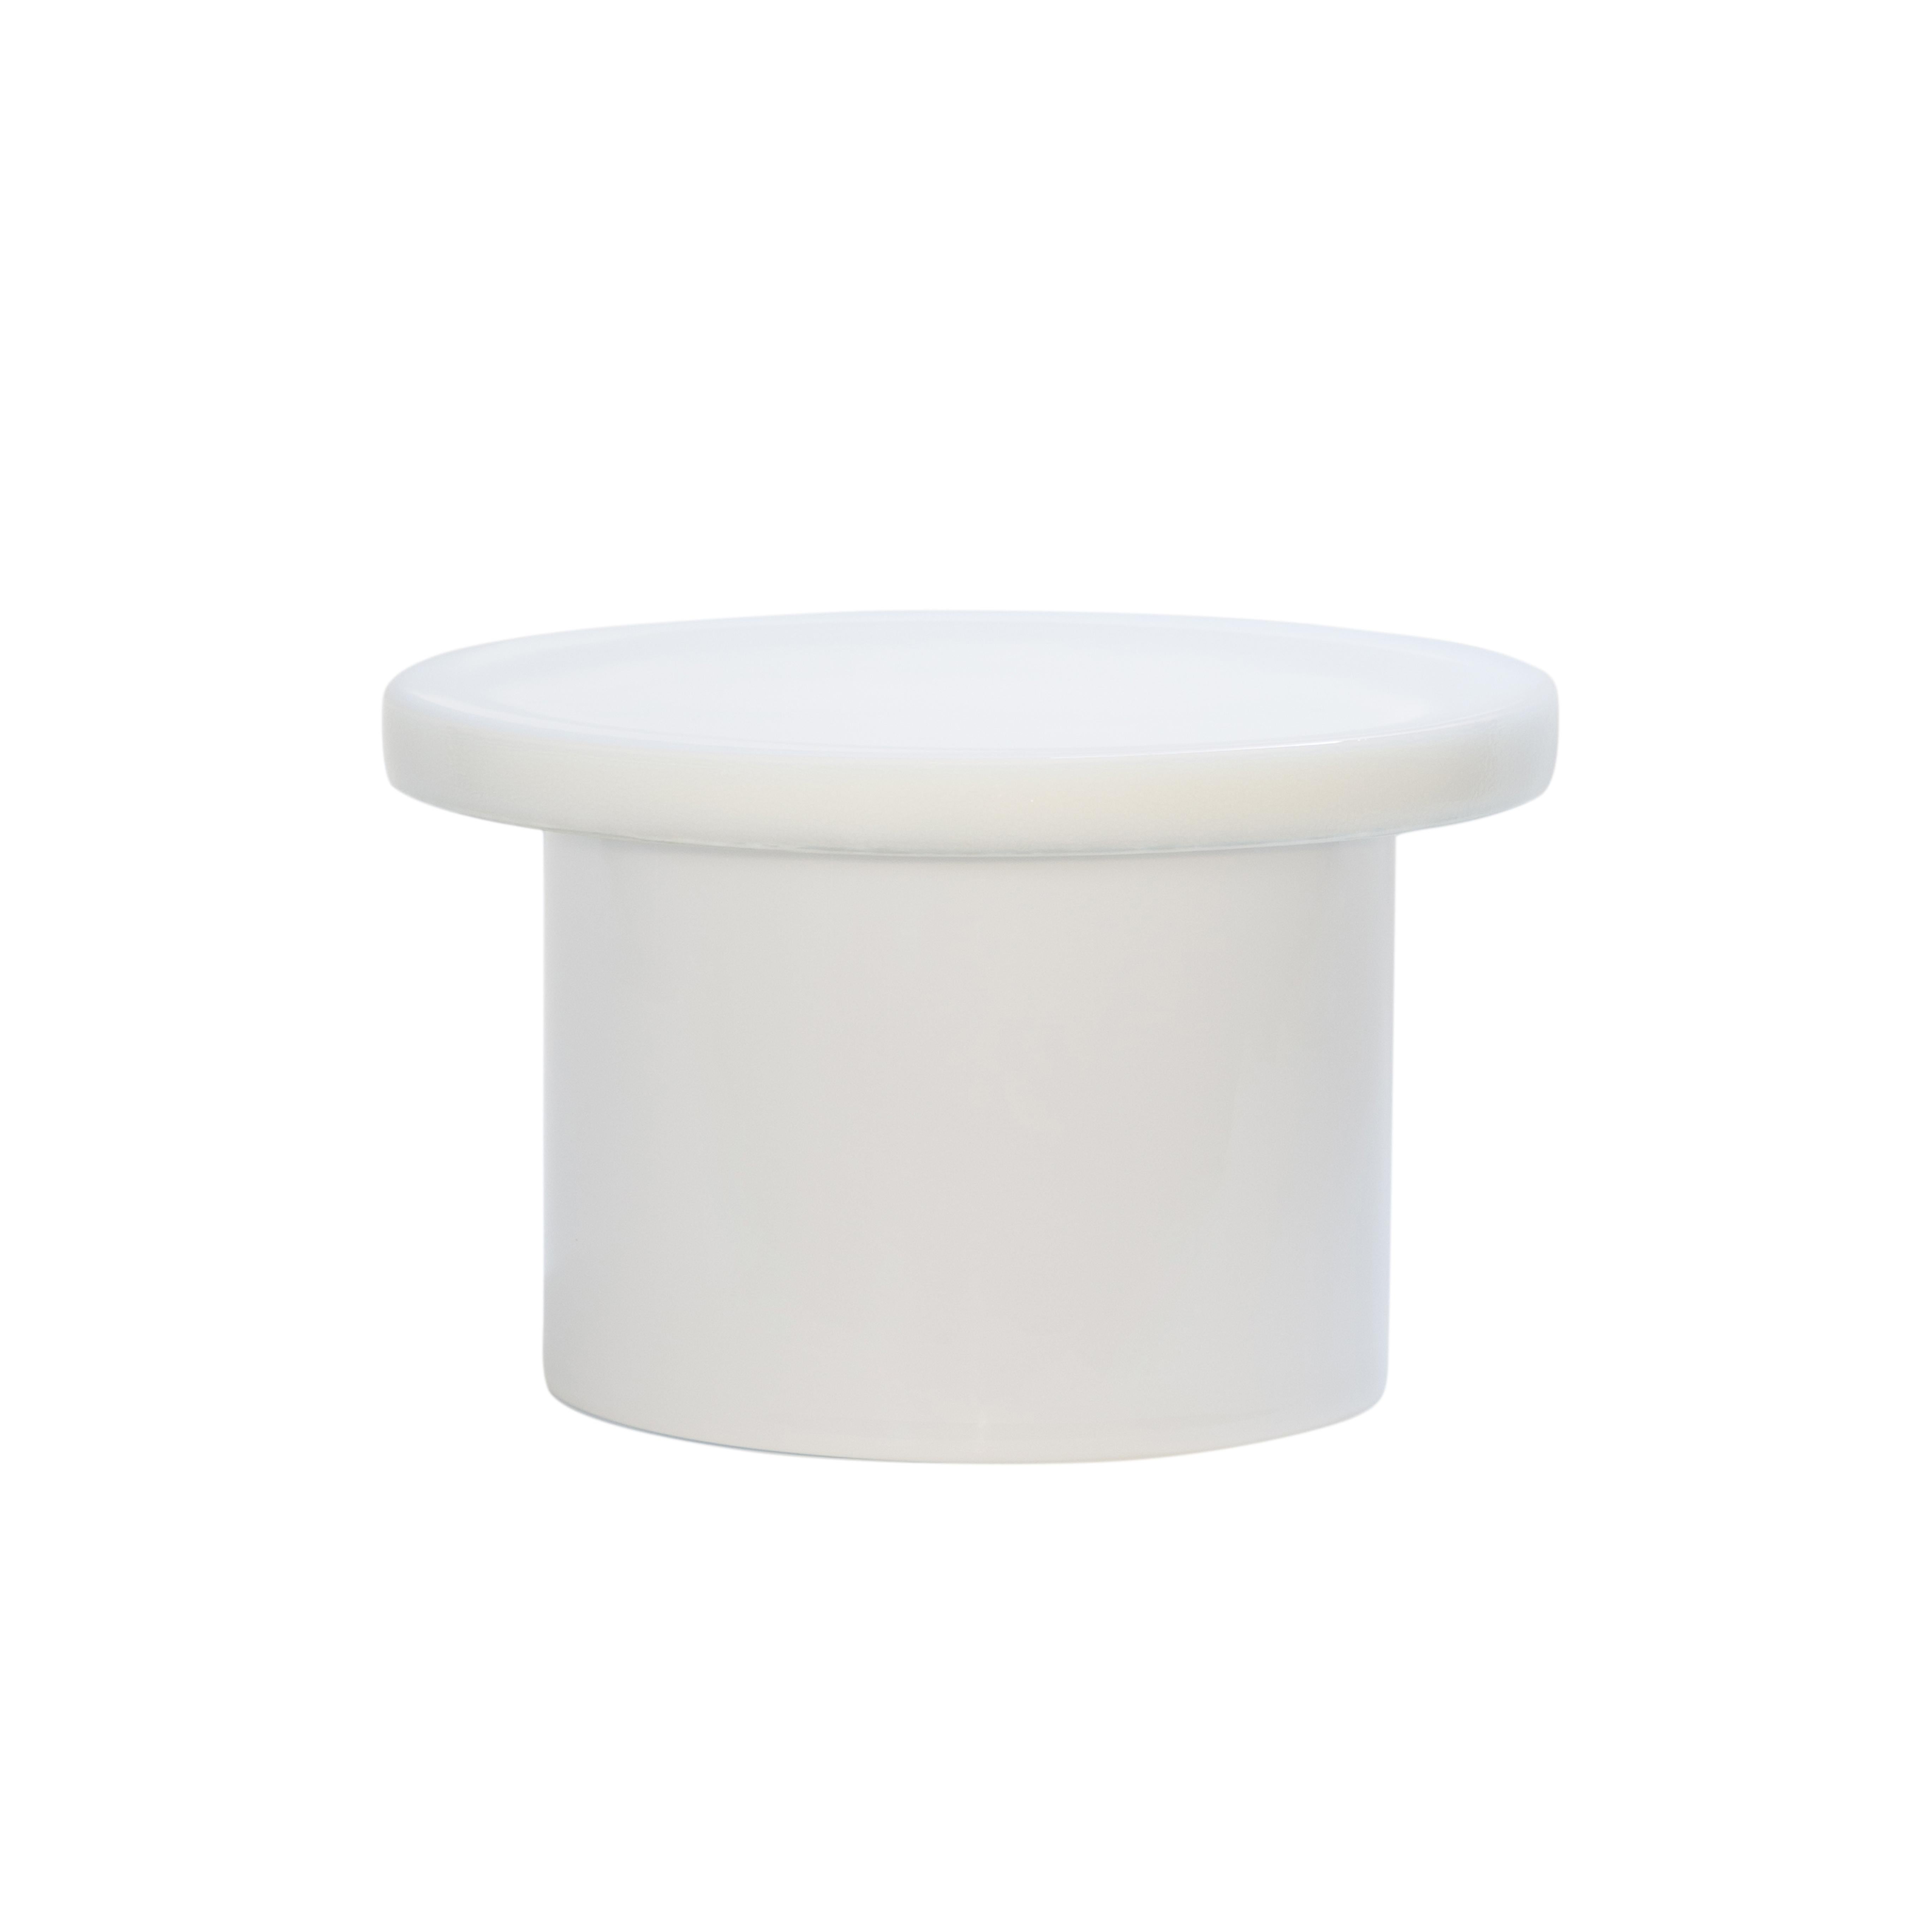 Table basse Alwa trois grandes tables blanches par Pulpo
Dimensions : D56 x H35 cm
MATERIAL : Verre moulé et soufflé à la main

Disponible également en différentes couleurs. 

Normalement, le verre est considéré comme un matériau léger aux